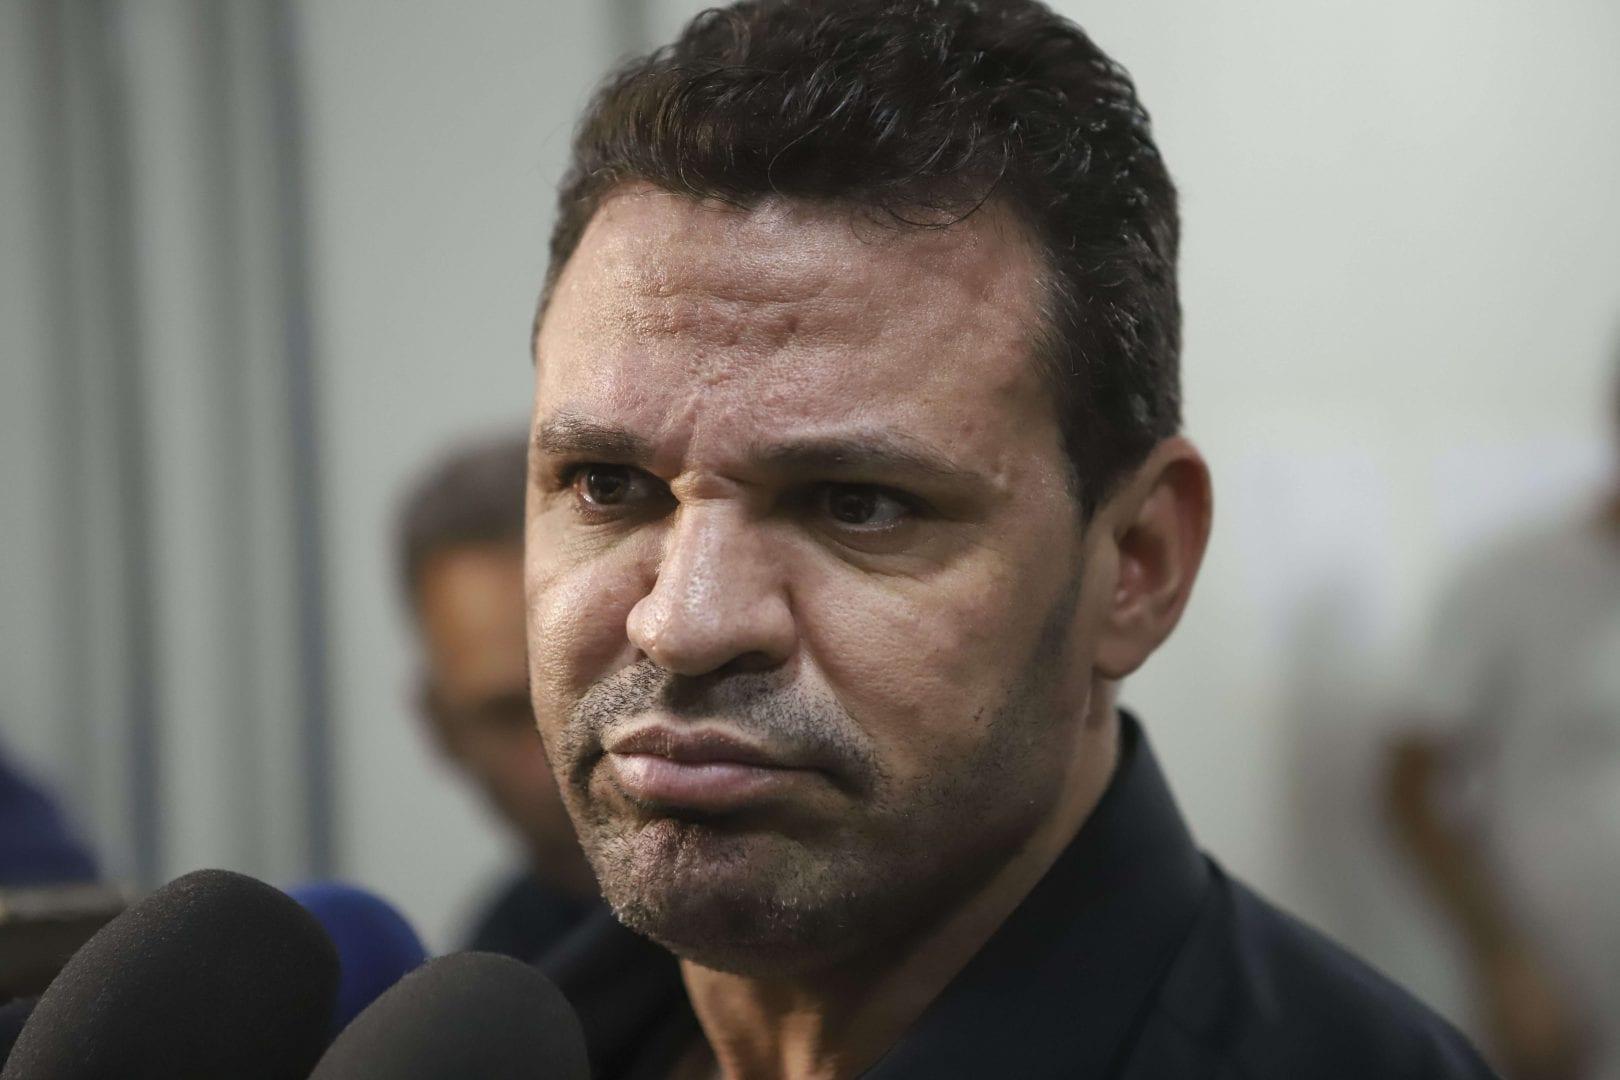 "Fui babaca", diz Eduardo Costa em pedido de desculpas para Fernanda Lima